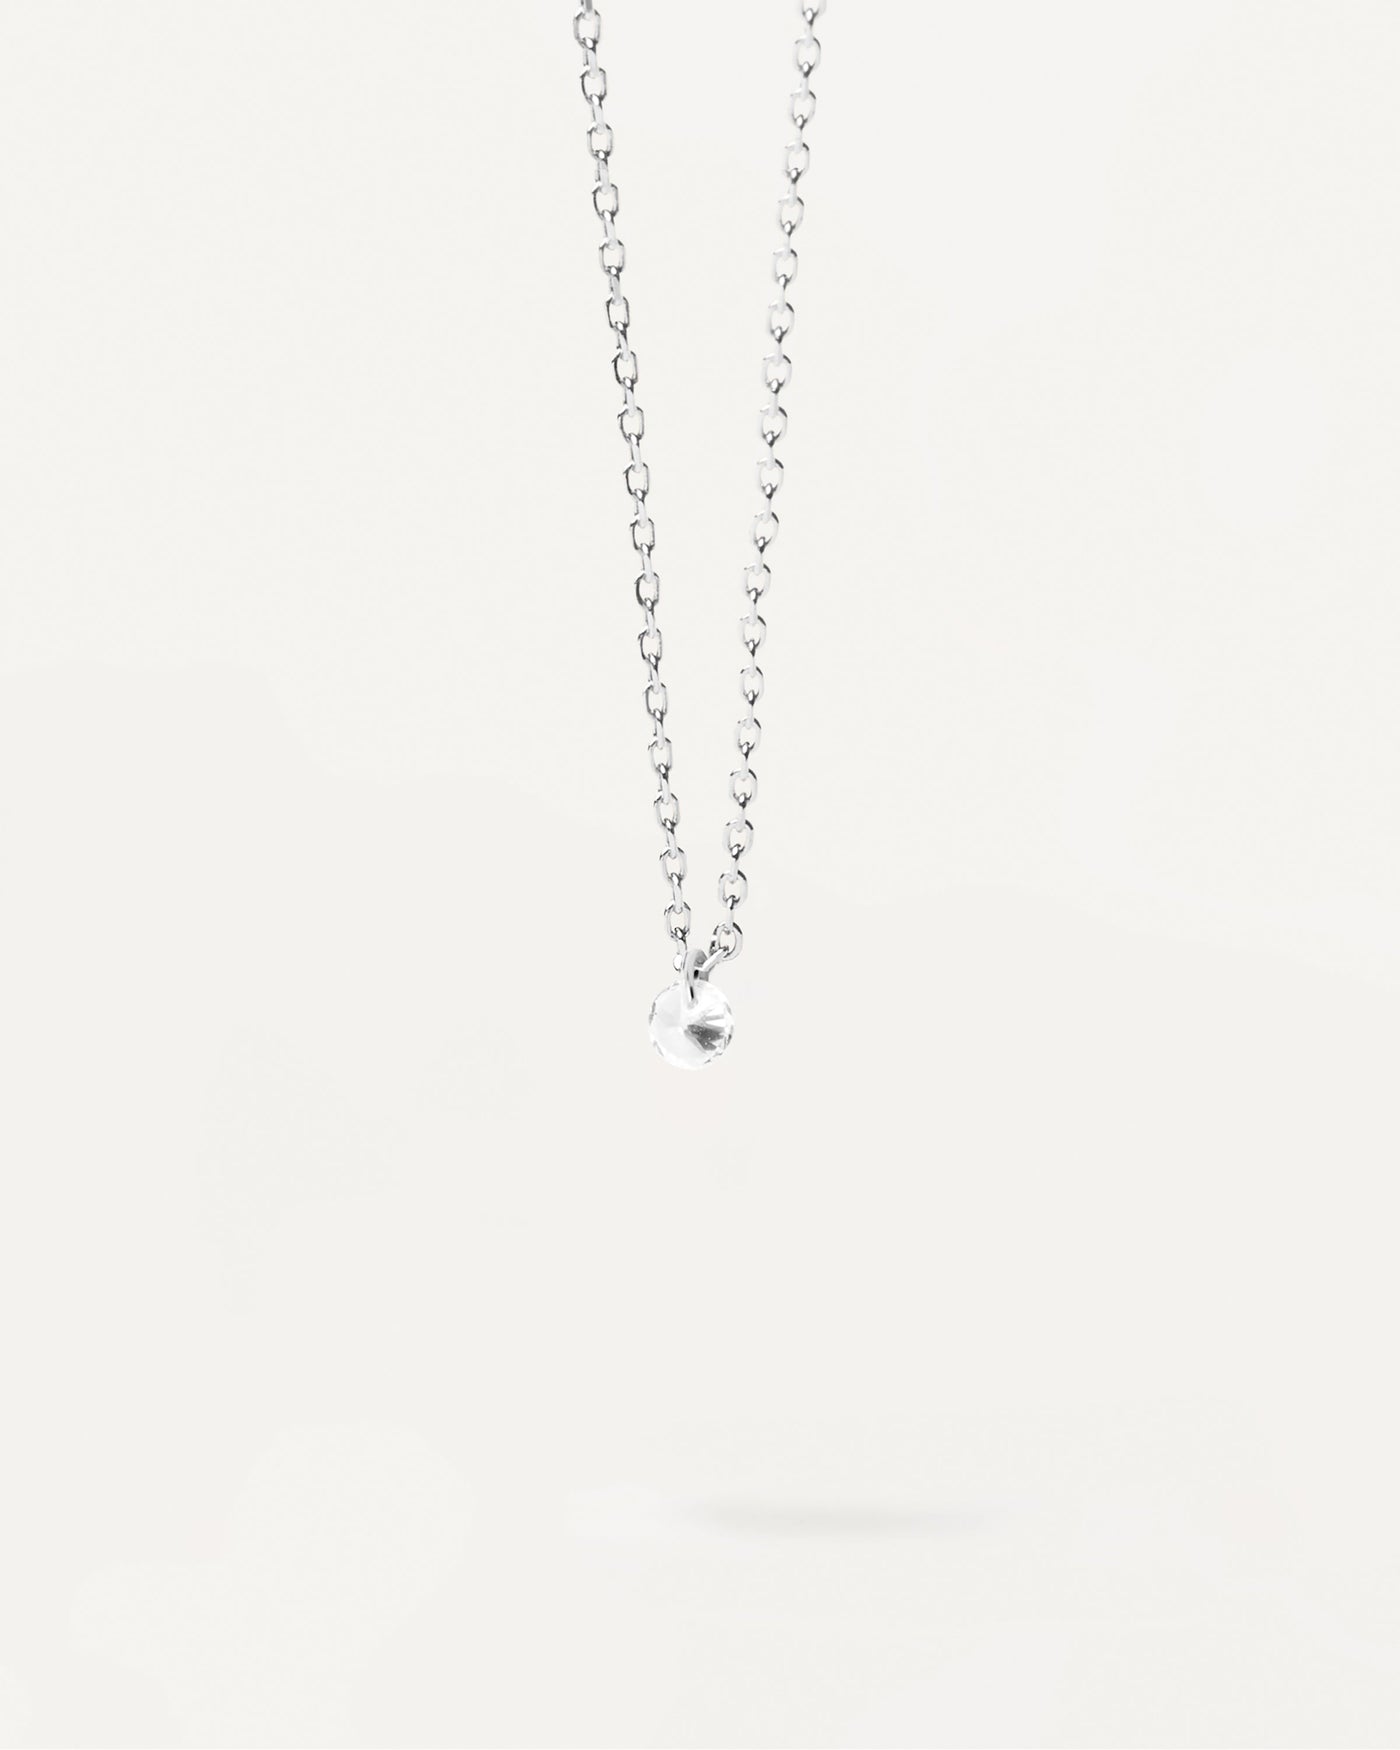 Joy Silber Solitär-Halskette. Minimalistische Halskette aus Sterlingsilber mit rundem Zirkonia-Anhänger. Erhalten Sie die neuesten Produkte von PDPAOLA. Geben Sie Ihre Bestellung sicher auf und erhalten Sie diesen Bestseller.